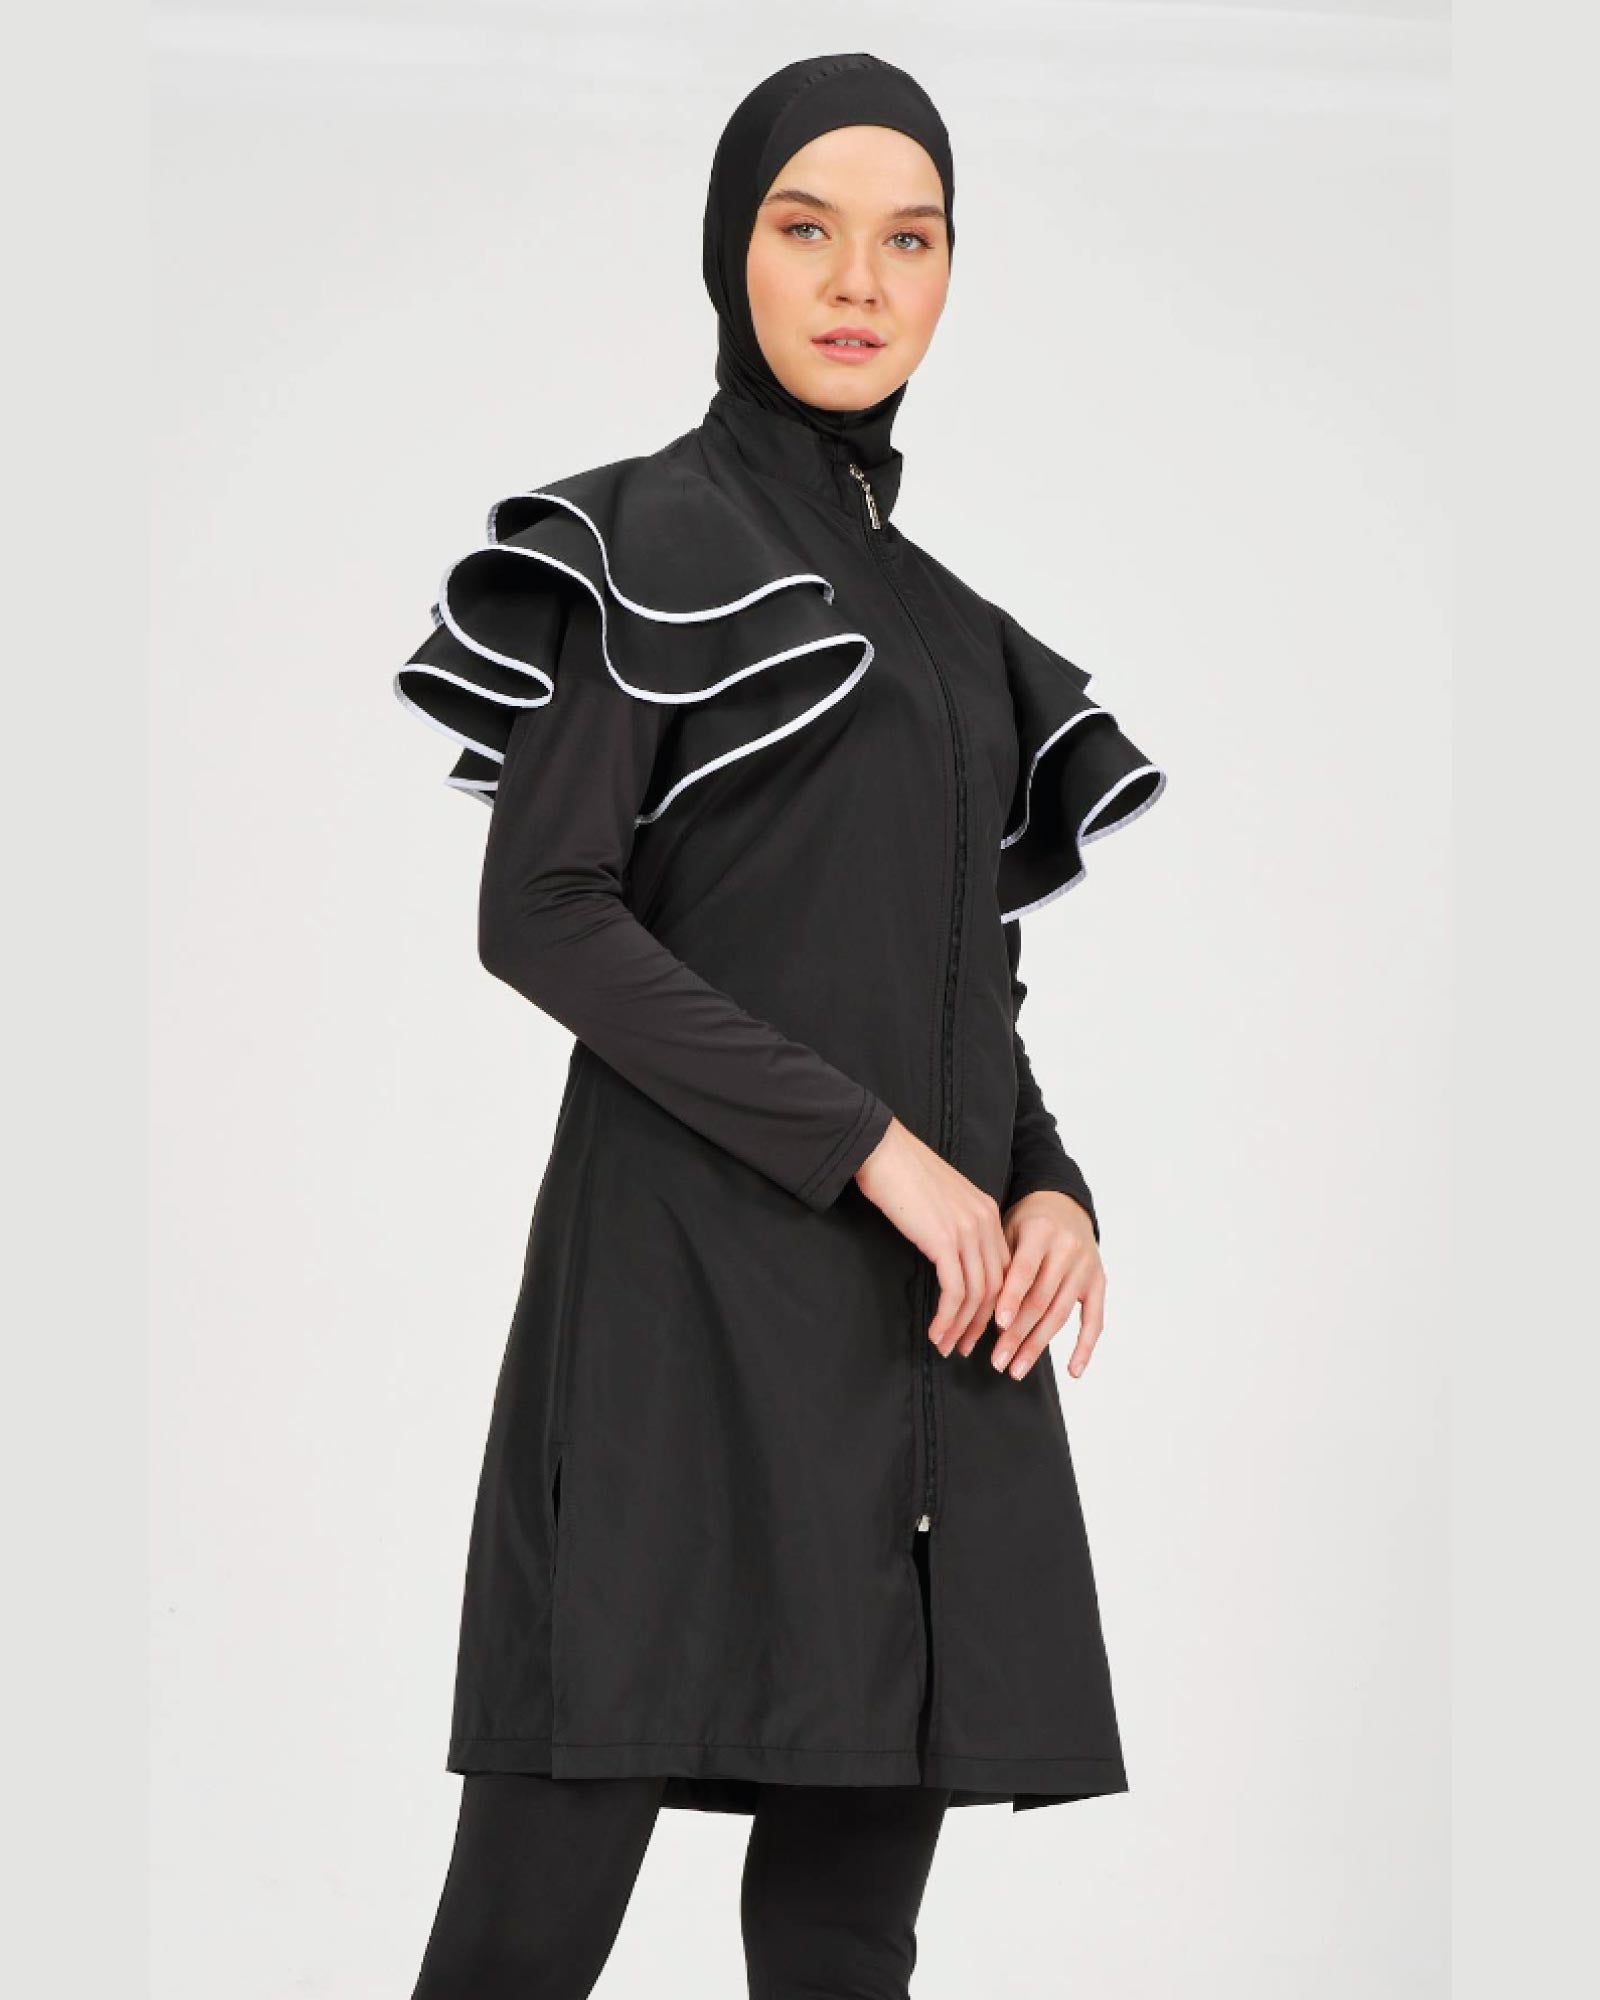 Hijab-Badeanzug mit Rüschendetail an der Schulter 4er Set